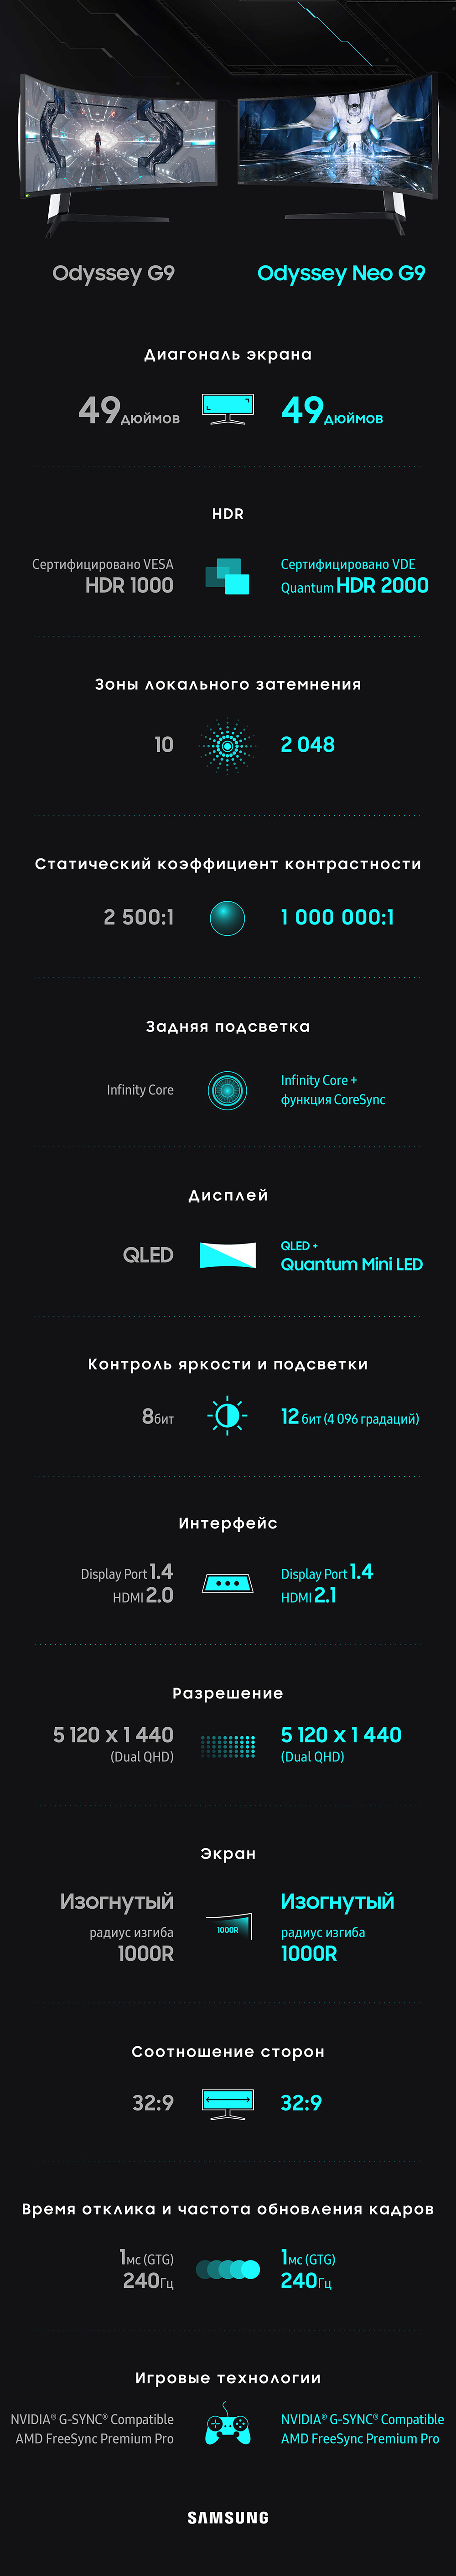 Особенности монитора Odyssey Neo G9 от Samsung в инфографике